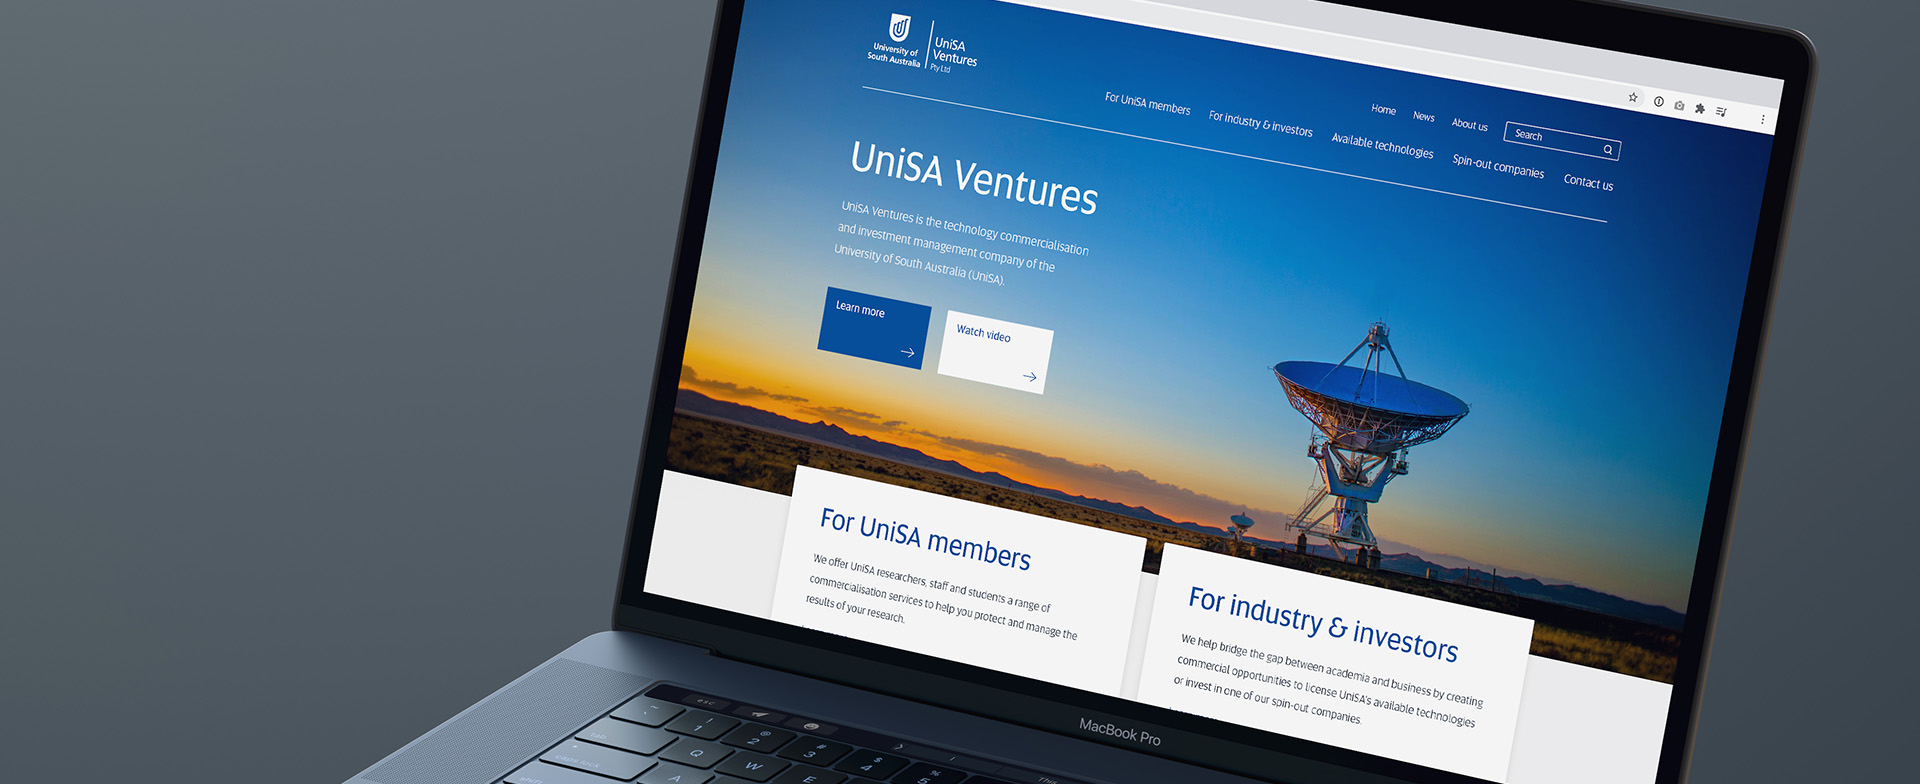 UniSA Ventures Website